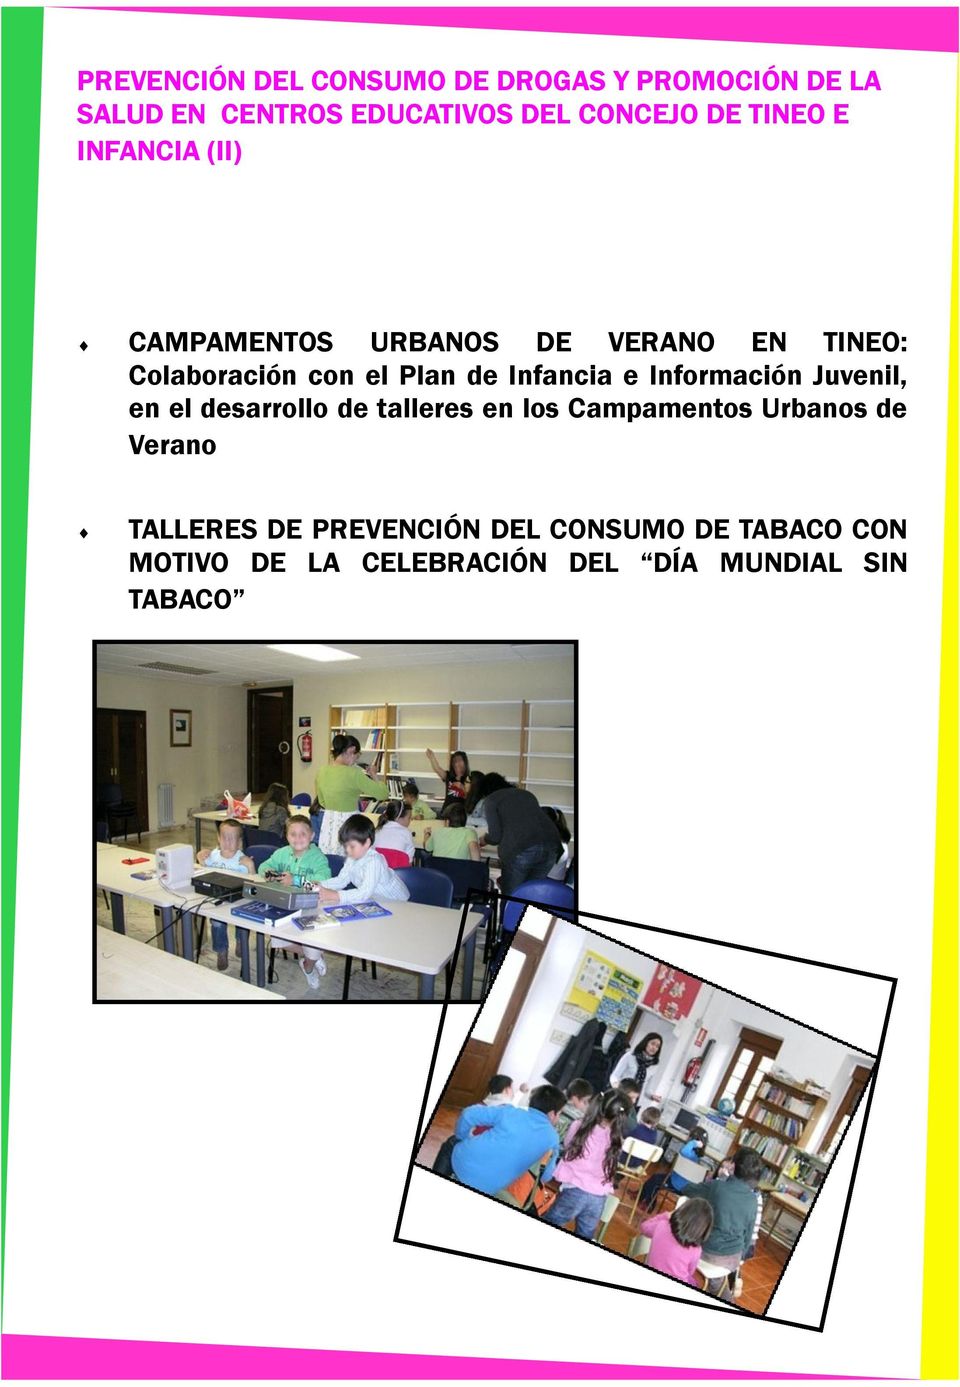 Infancia e Información Juvenil, en el desarrollo de talleres en los Campamentos Urbanos de